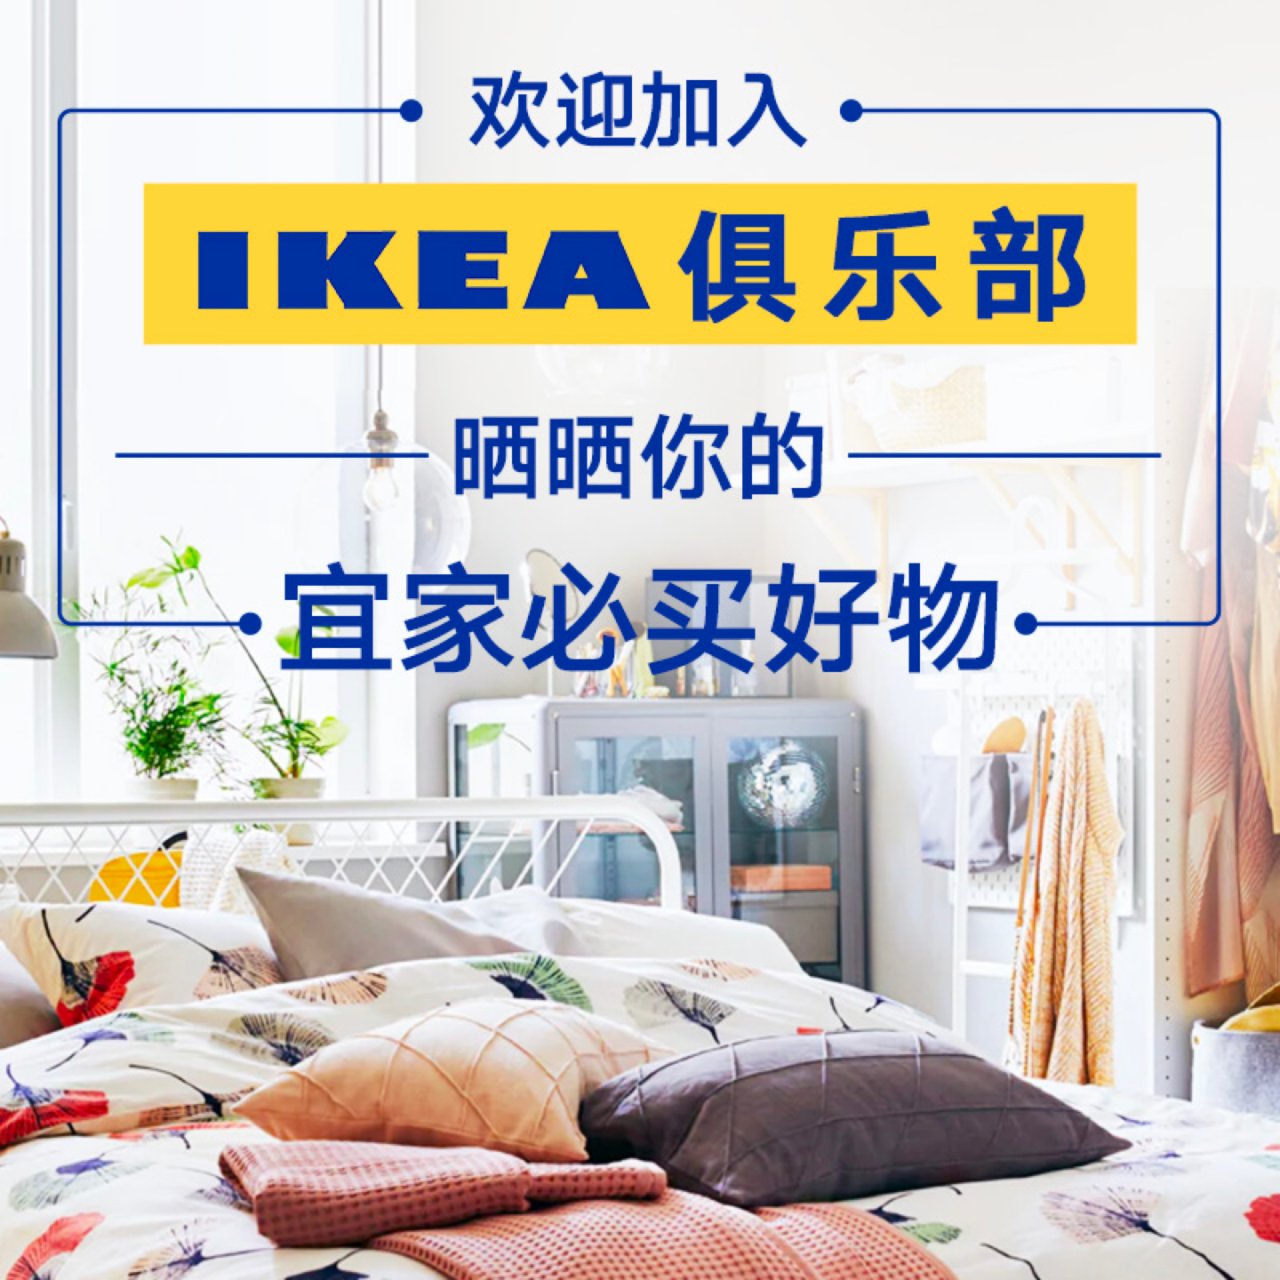 欢迎加入Ikea俱乐部，你去宜家必买啥？...